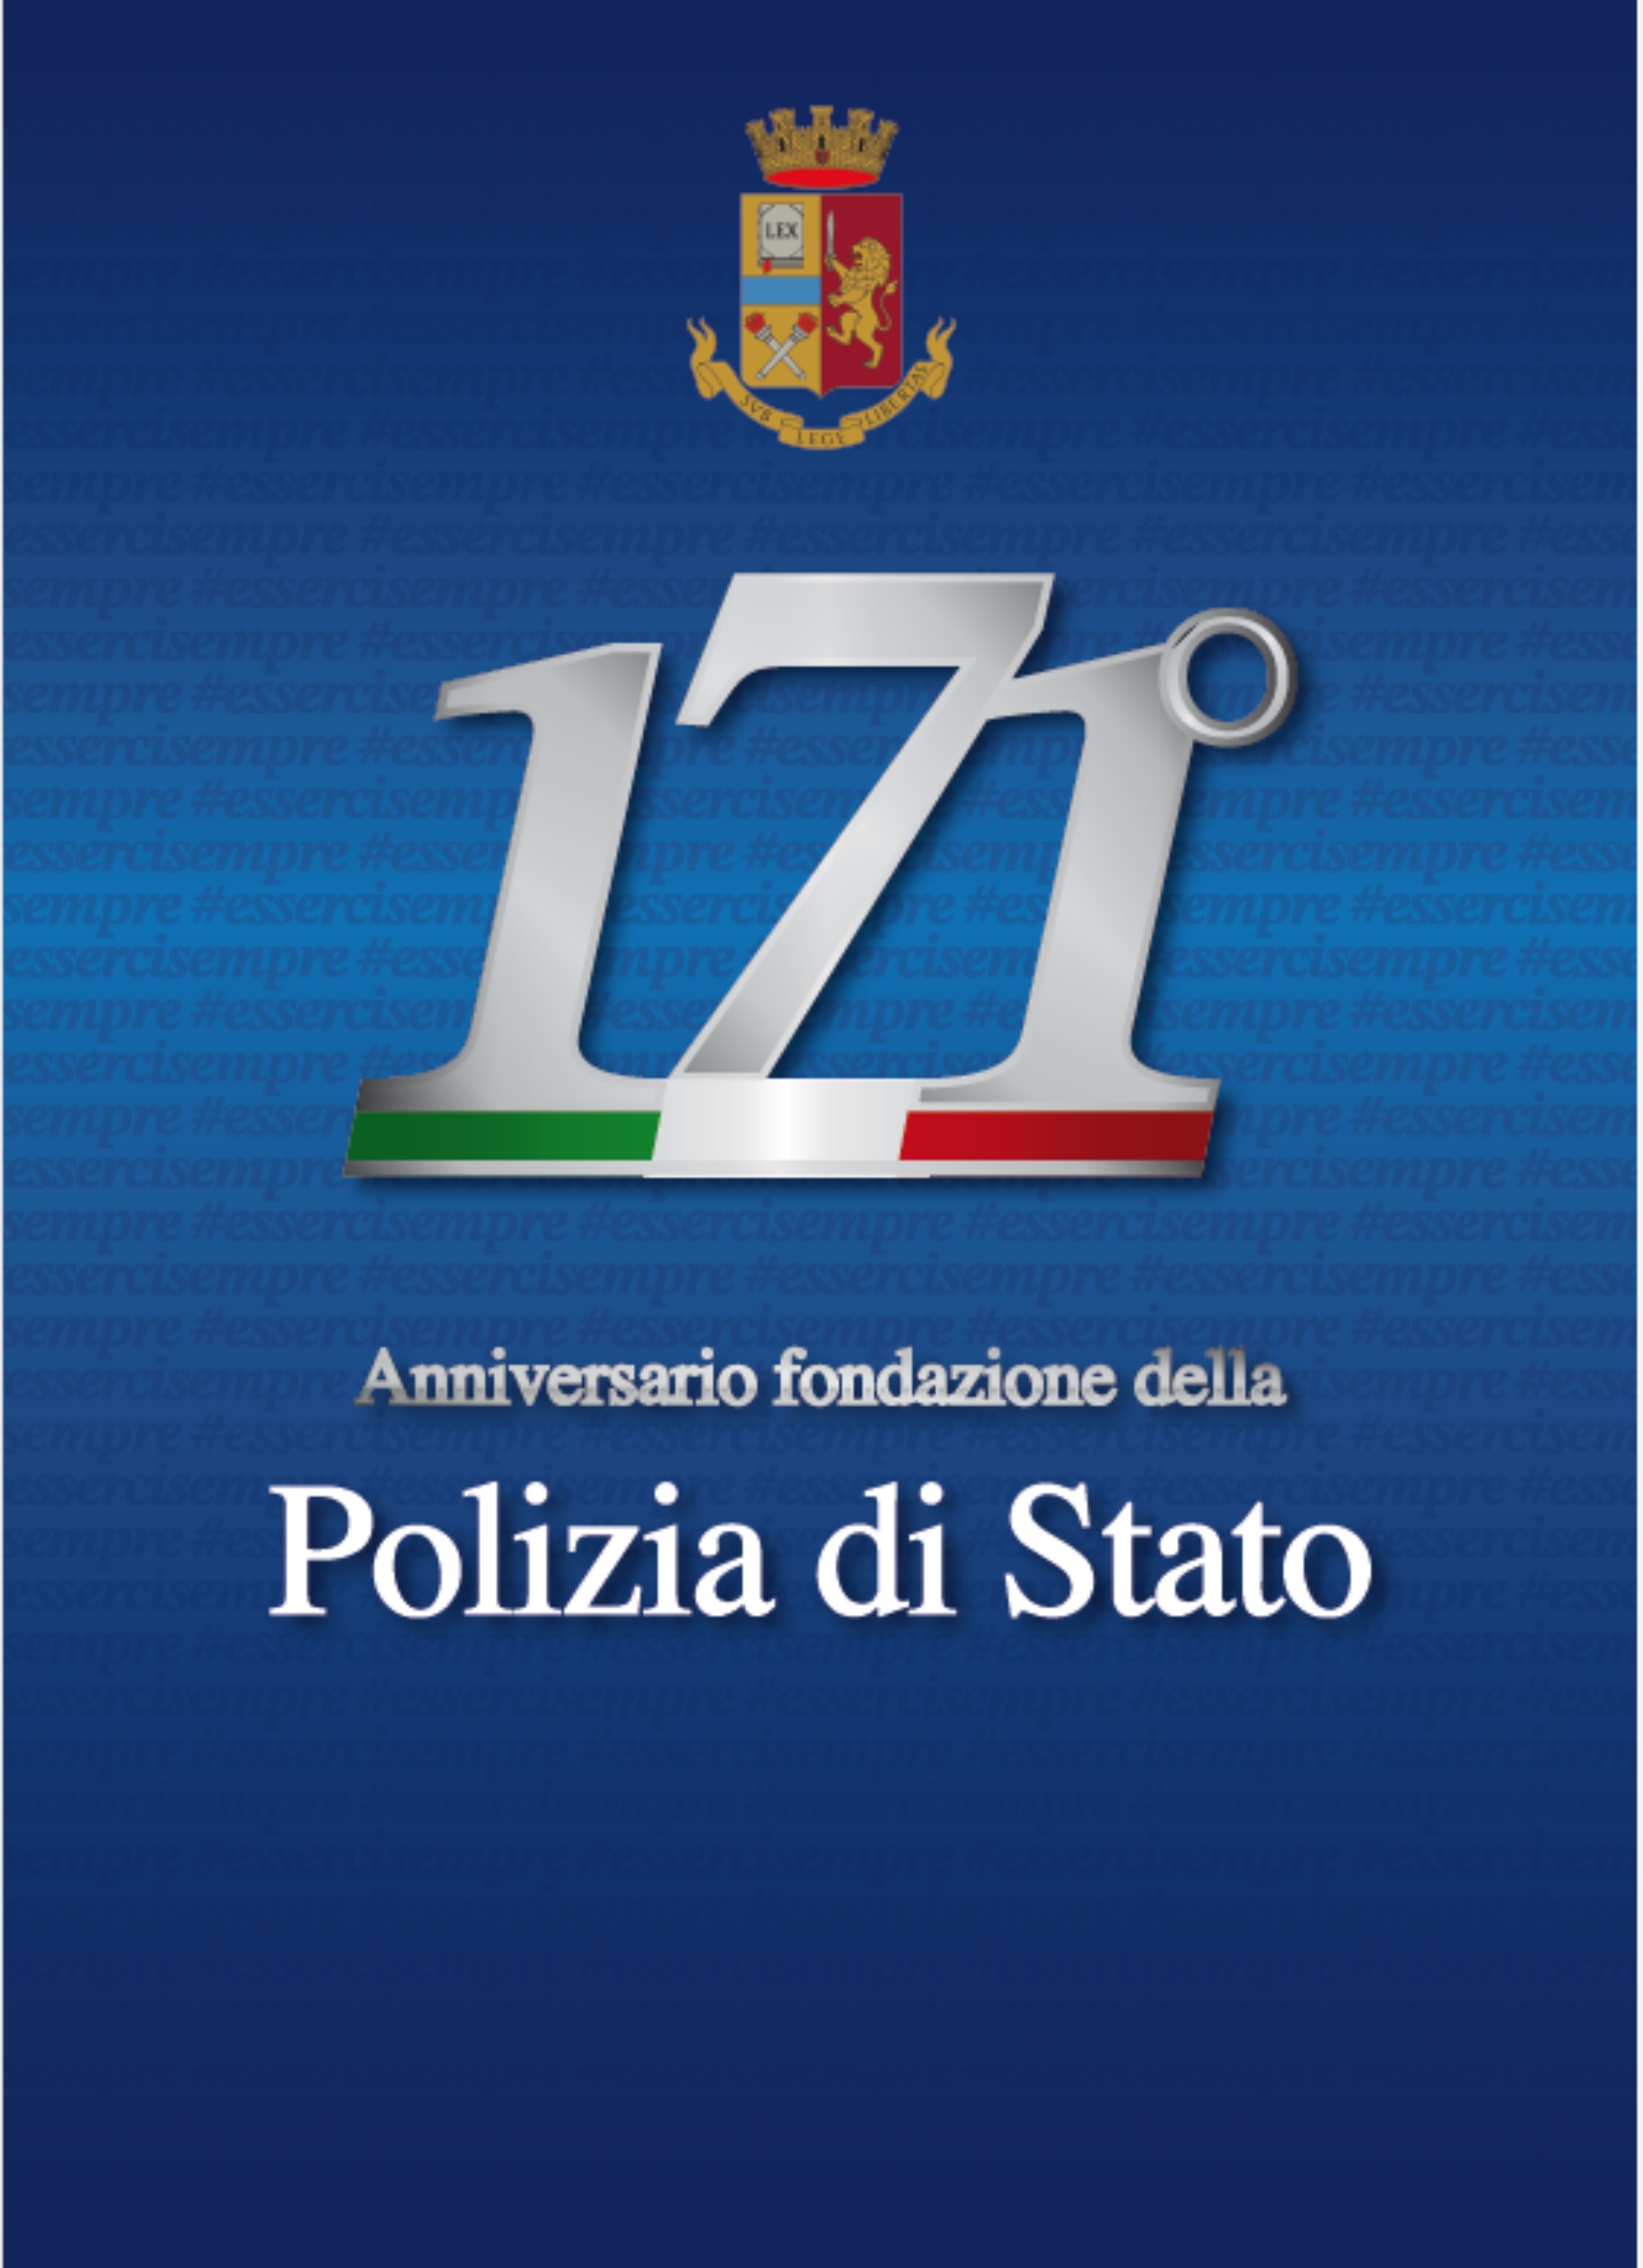 171° ANNIVERSARIO DELLA FONDAZIONE DELLA POLIZIA DI STATO